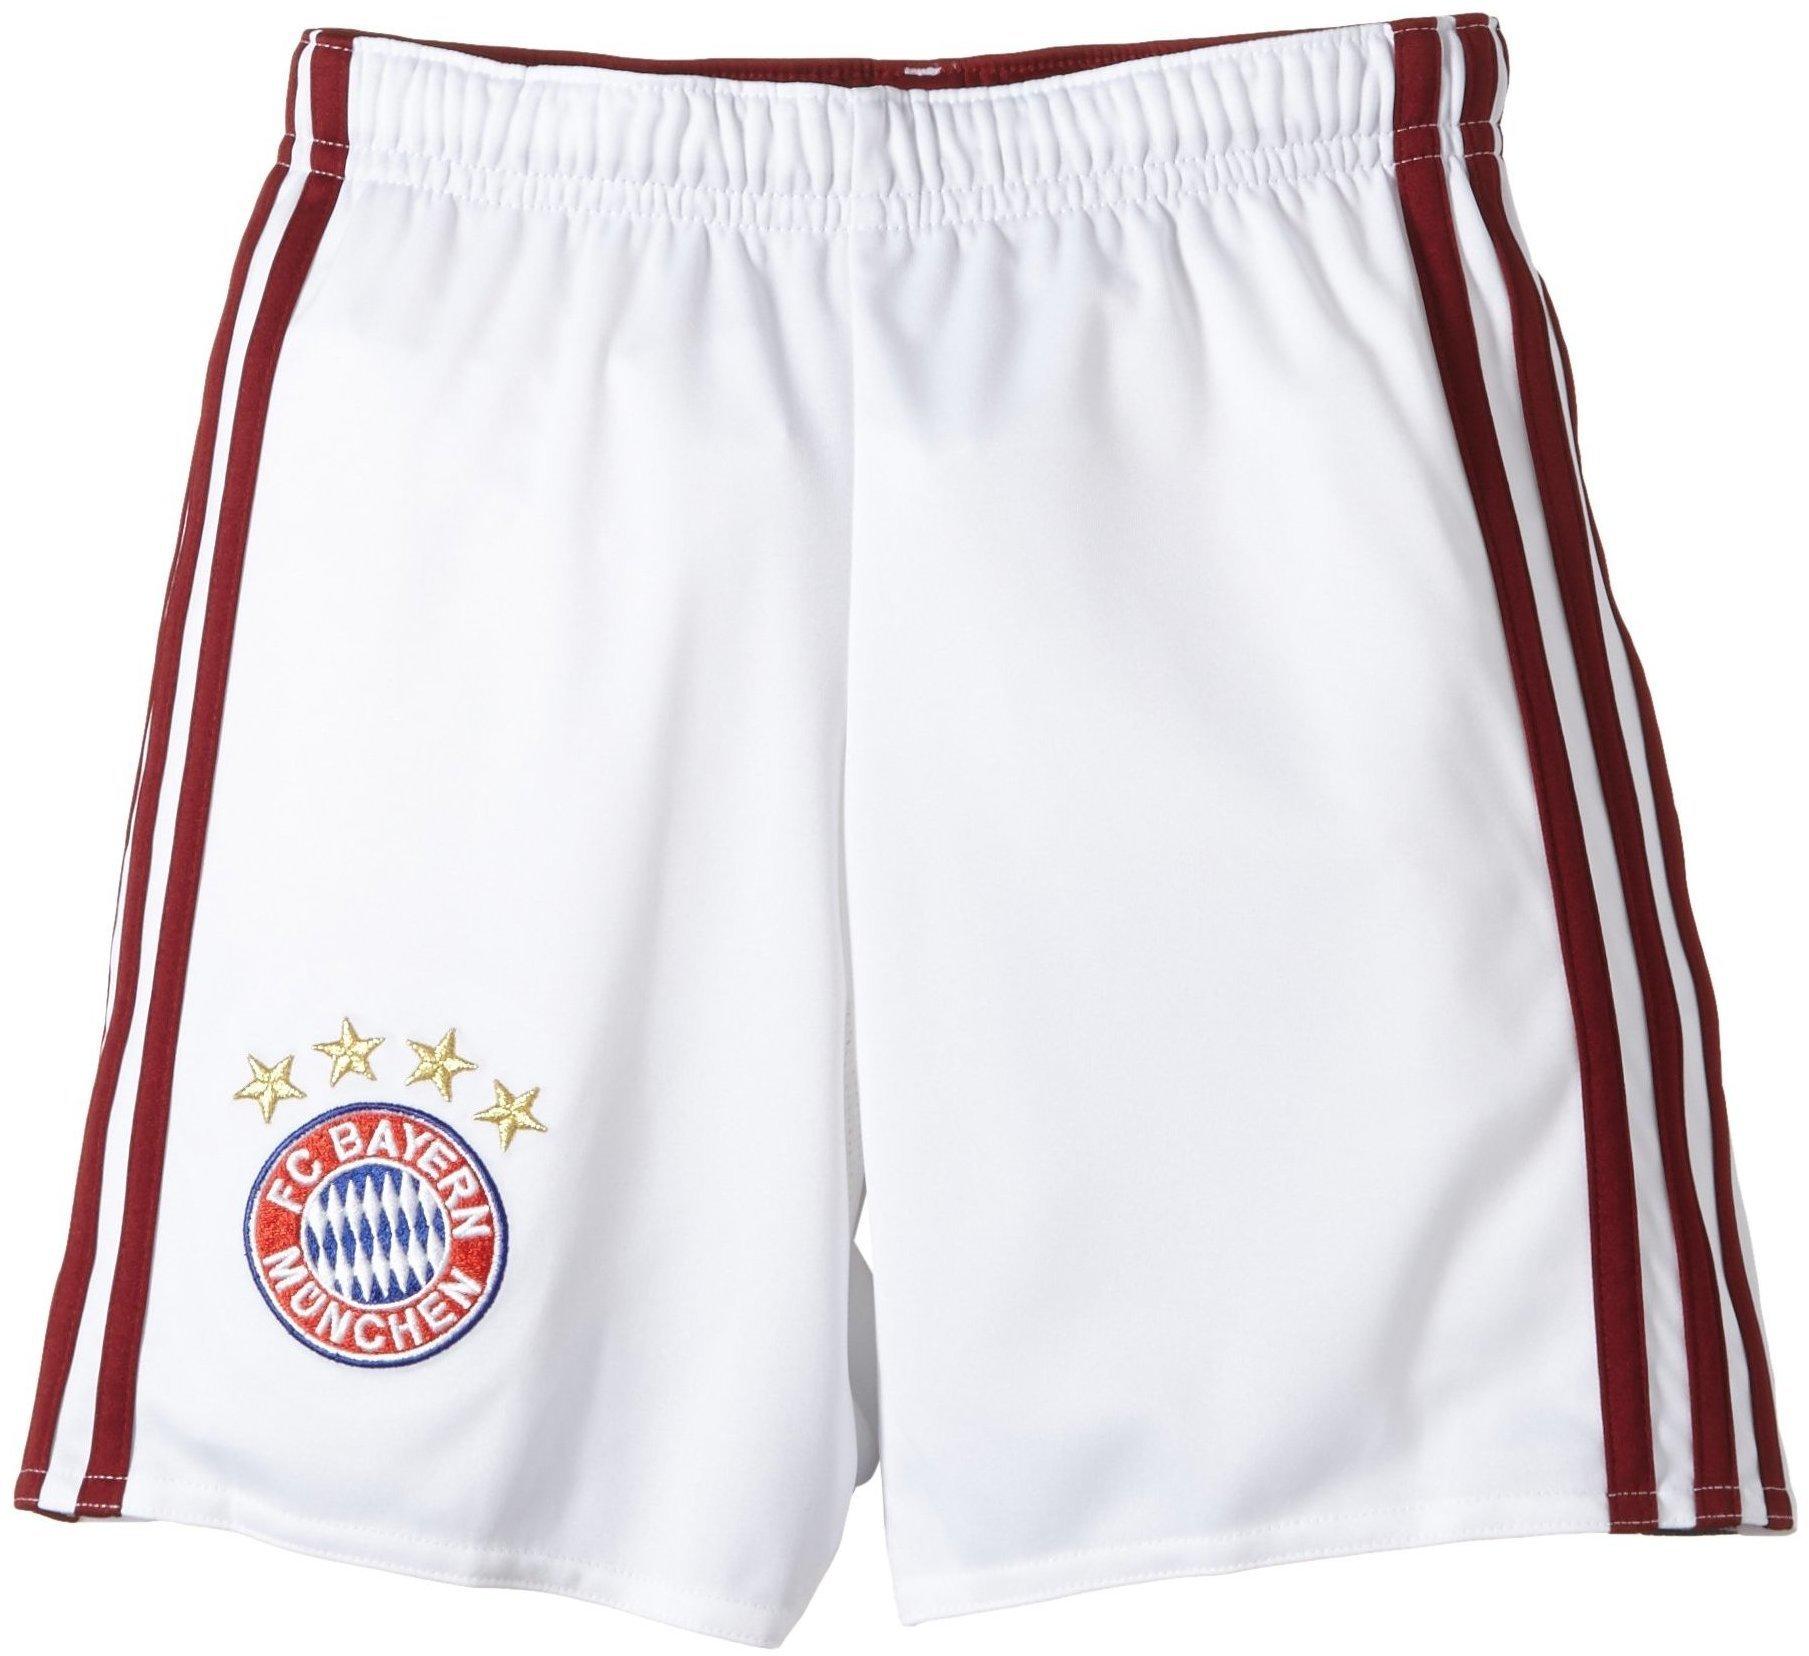 adidas FC Bayern München Kinder Auswärts Short 2014/2015 white/collegiate  burgundy Gr. 176 Test ❤️ Jetzt ab 19,99 € (Januar 2022) Testbericht.de